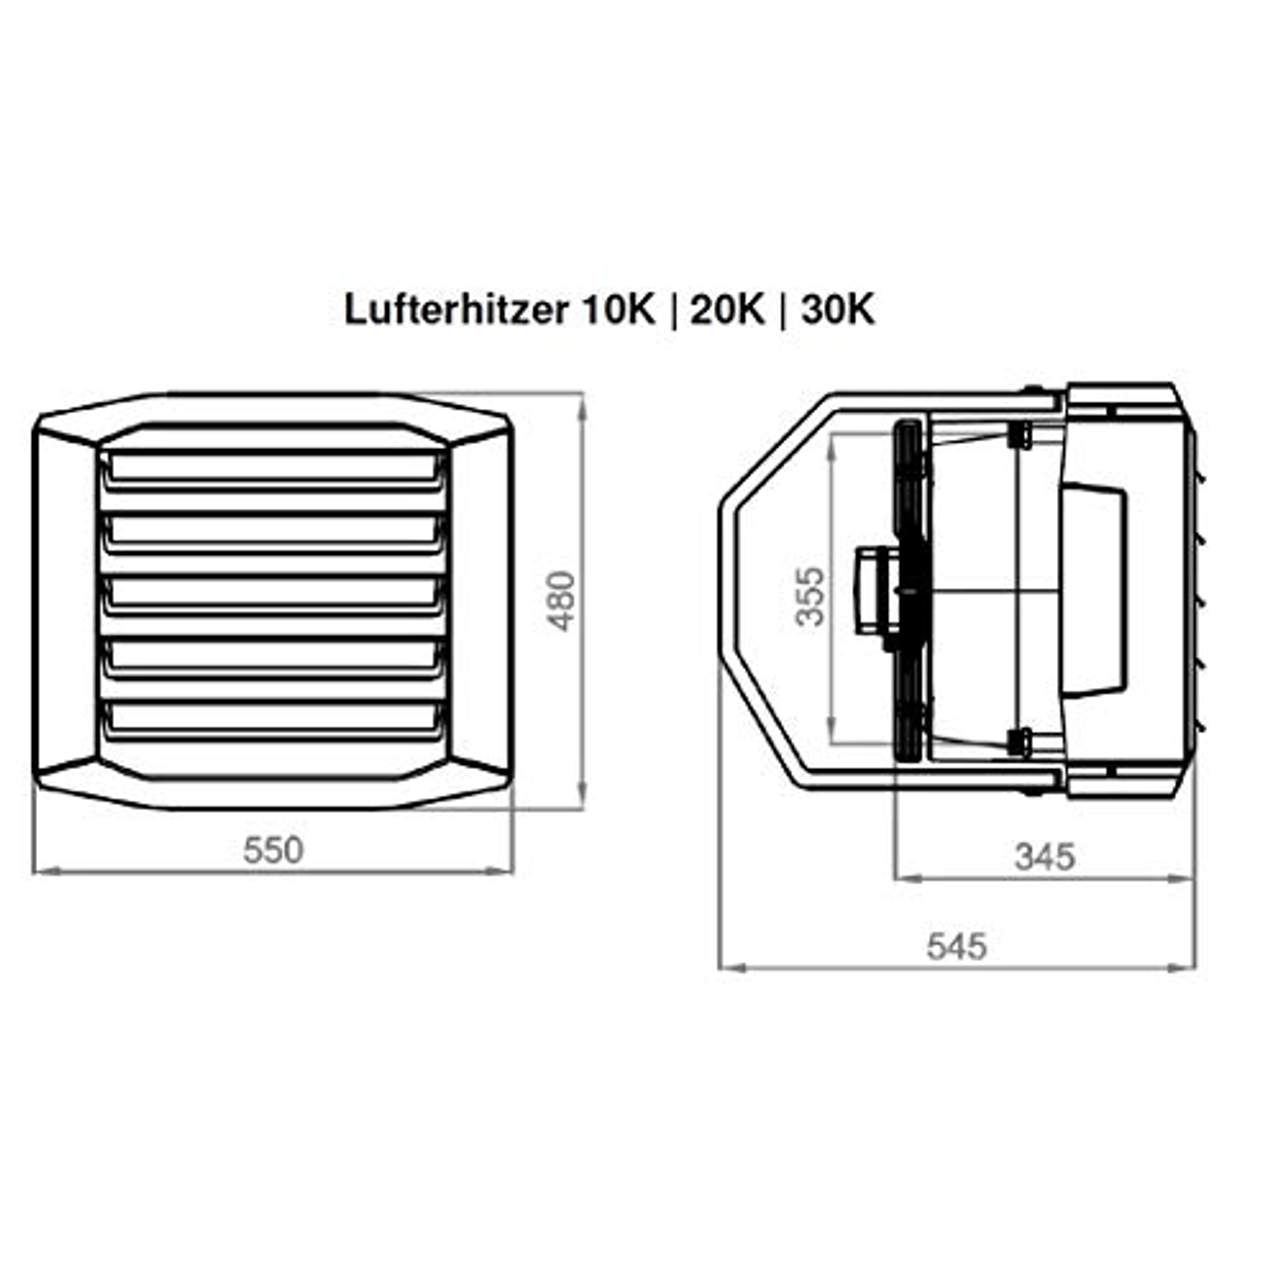 Luftheizer 50 kW Montagekonsolle inkl. Steuerung Thermostat 